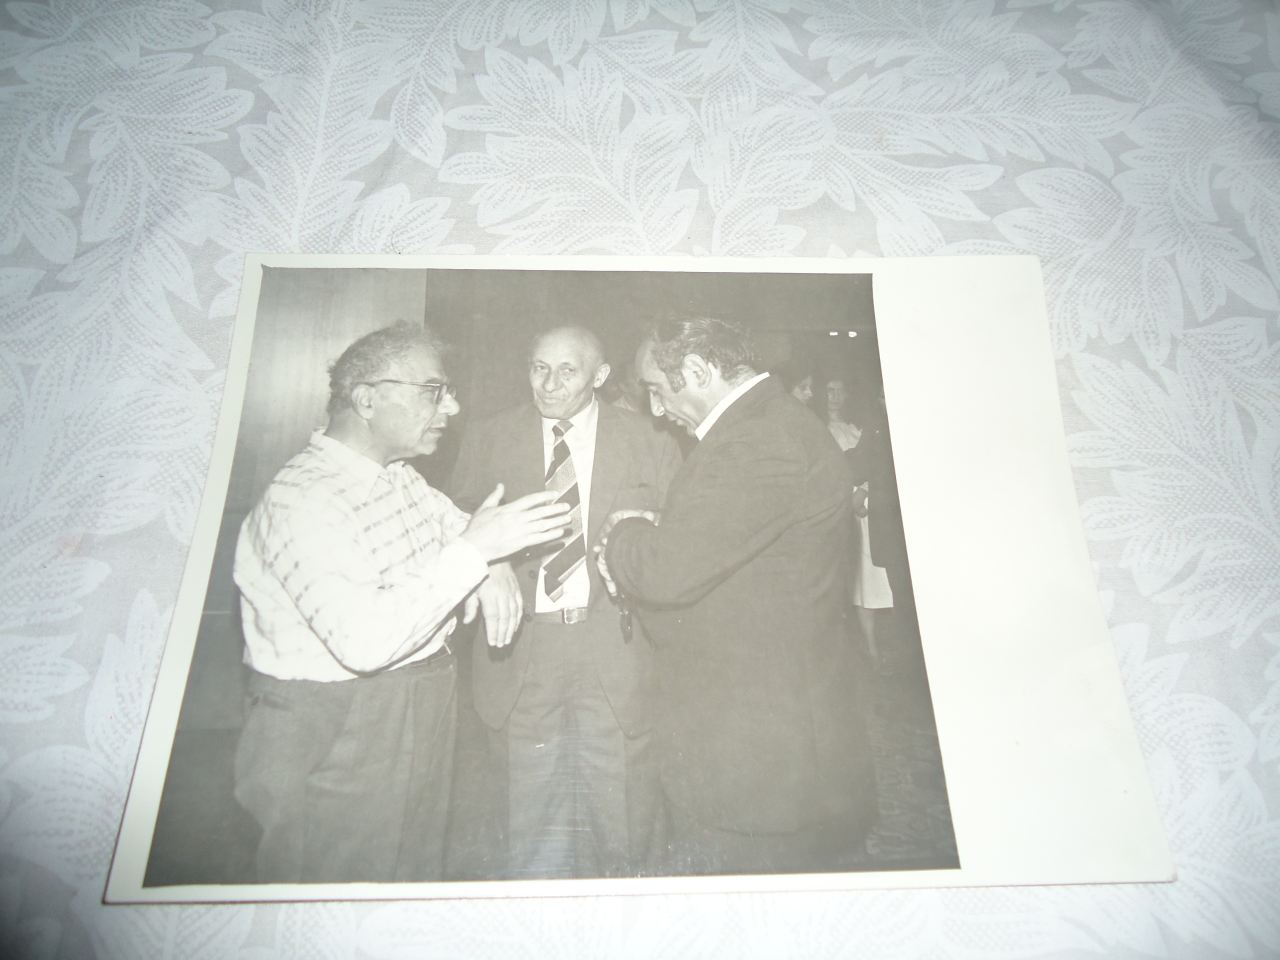 լուսանկար՝ Վ․Համբարձումյանը,Լ․Օհանյանը և Վ․Բալայանը տուն-թանգարանում 